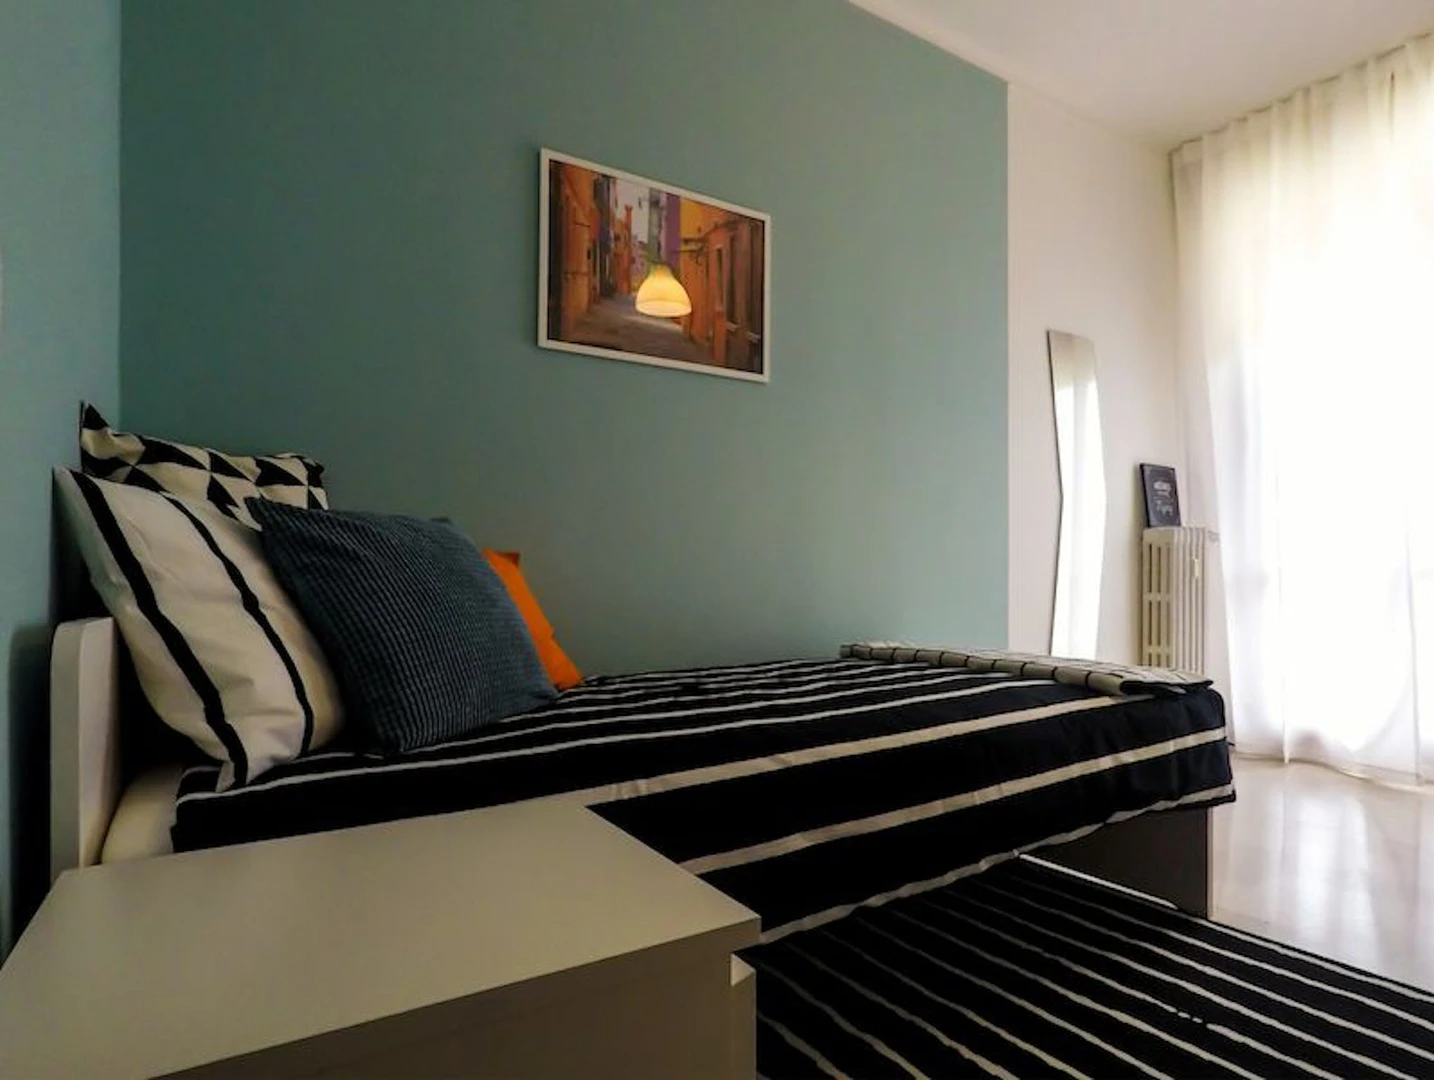 Zimmer mit Doppelbett zu vermieten Brescia